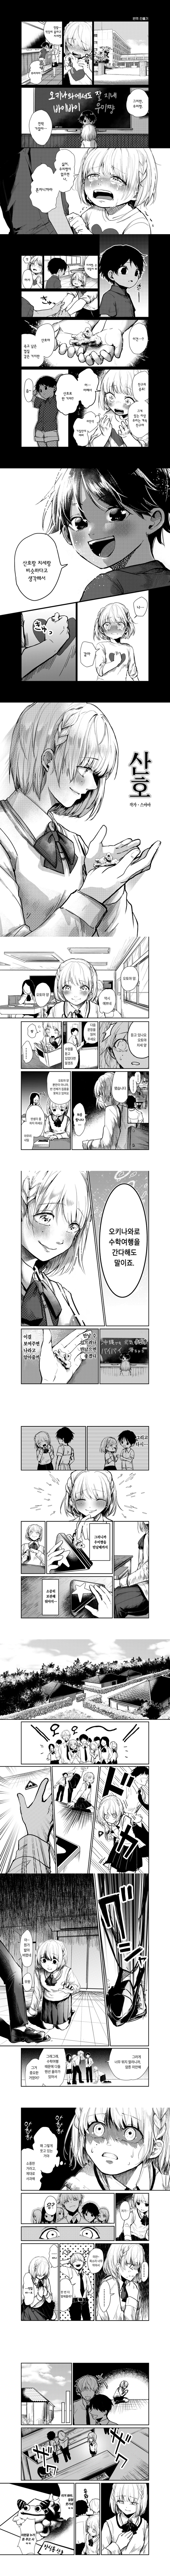 오키나와로 전학간 소꿉친구와 재회하는.Manga